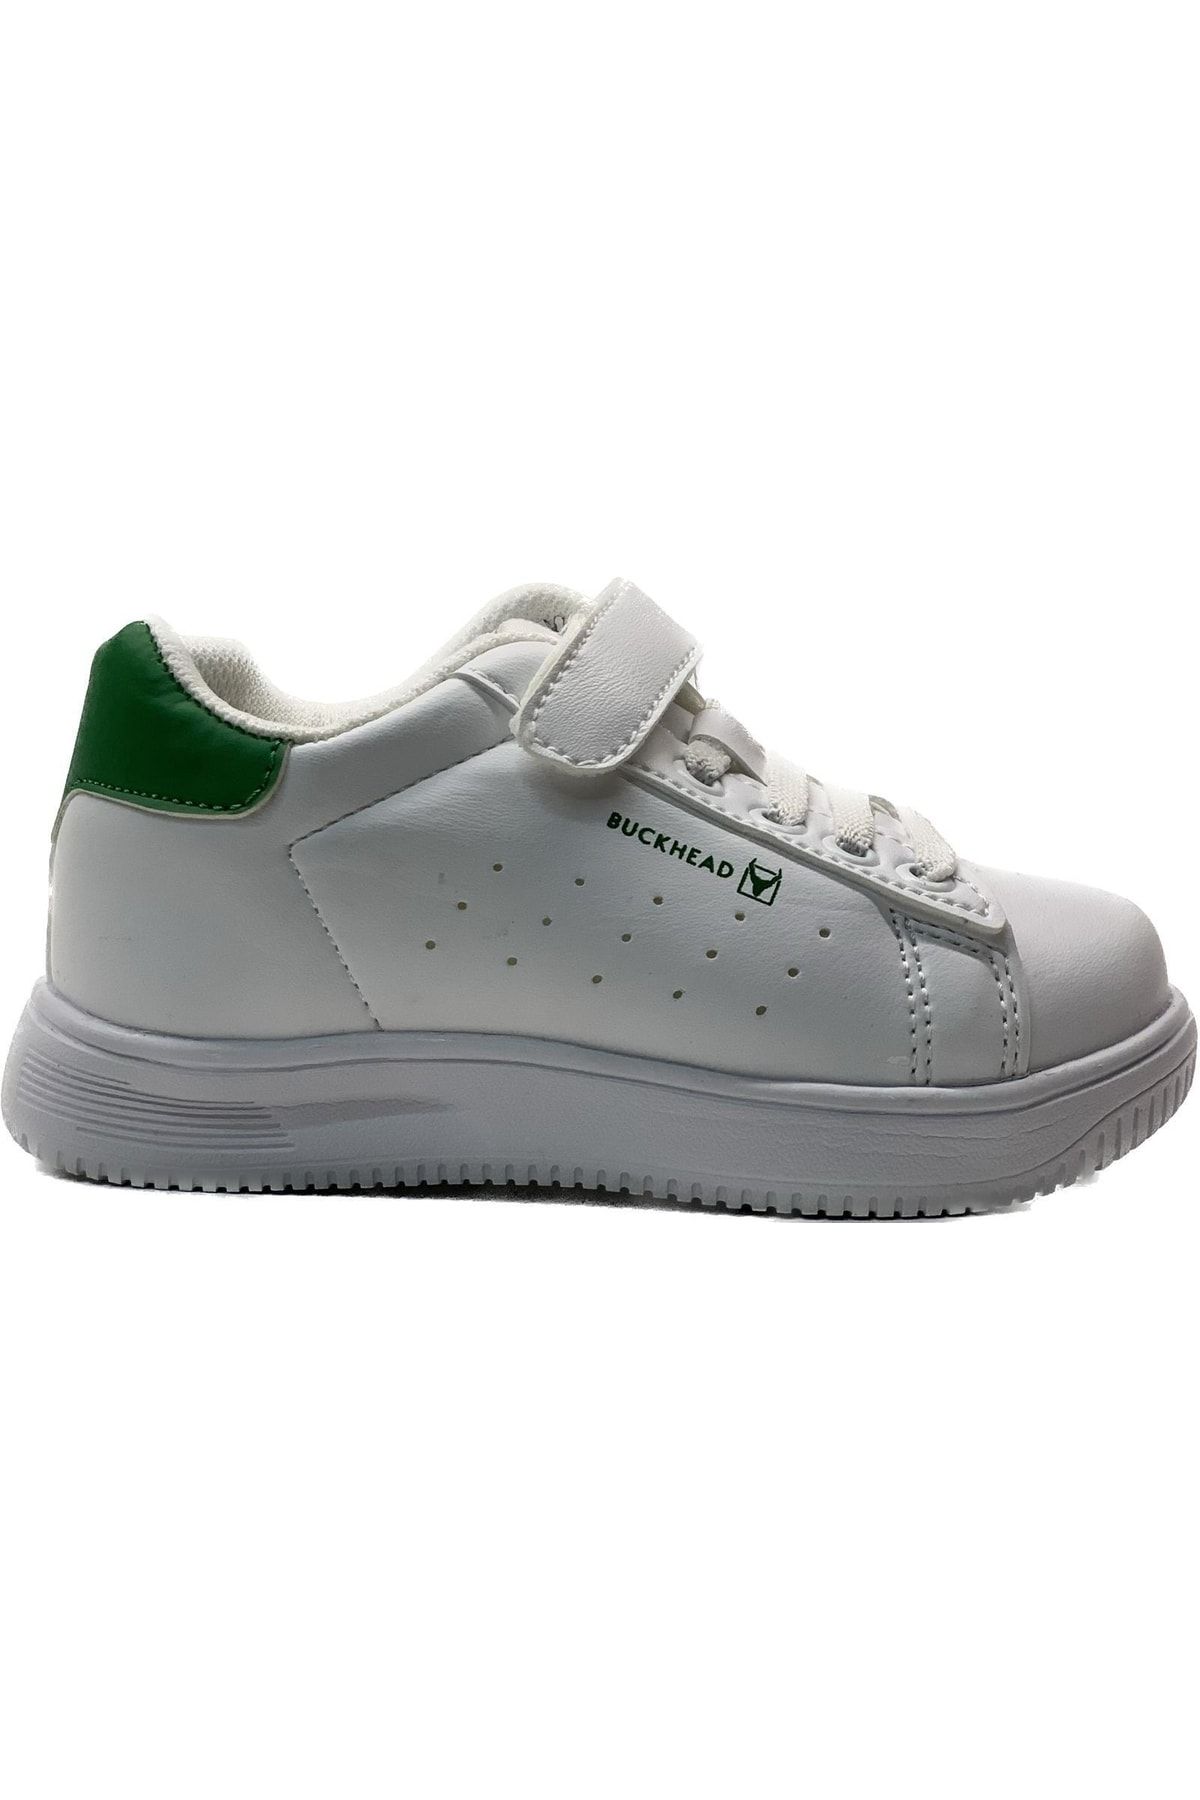 BUCKHEAD Boston Jr Ortopedik Hafif Unisex Çocuk Beyaz/yeşil Sneaker